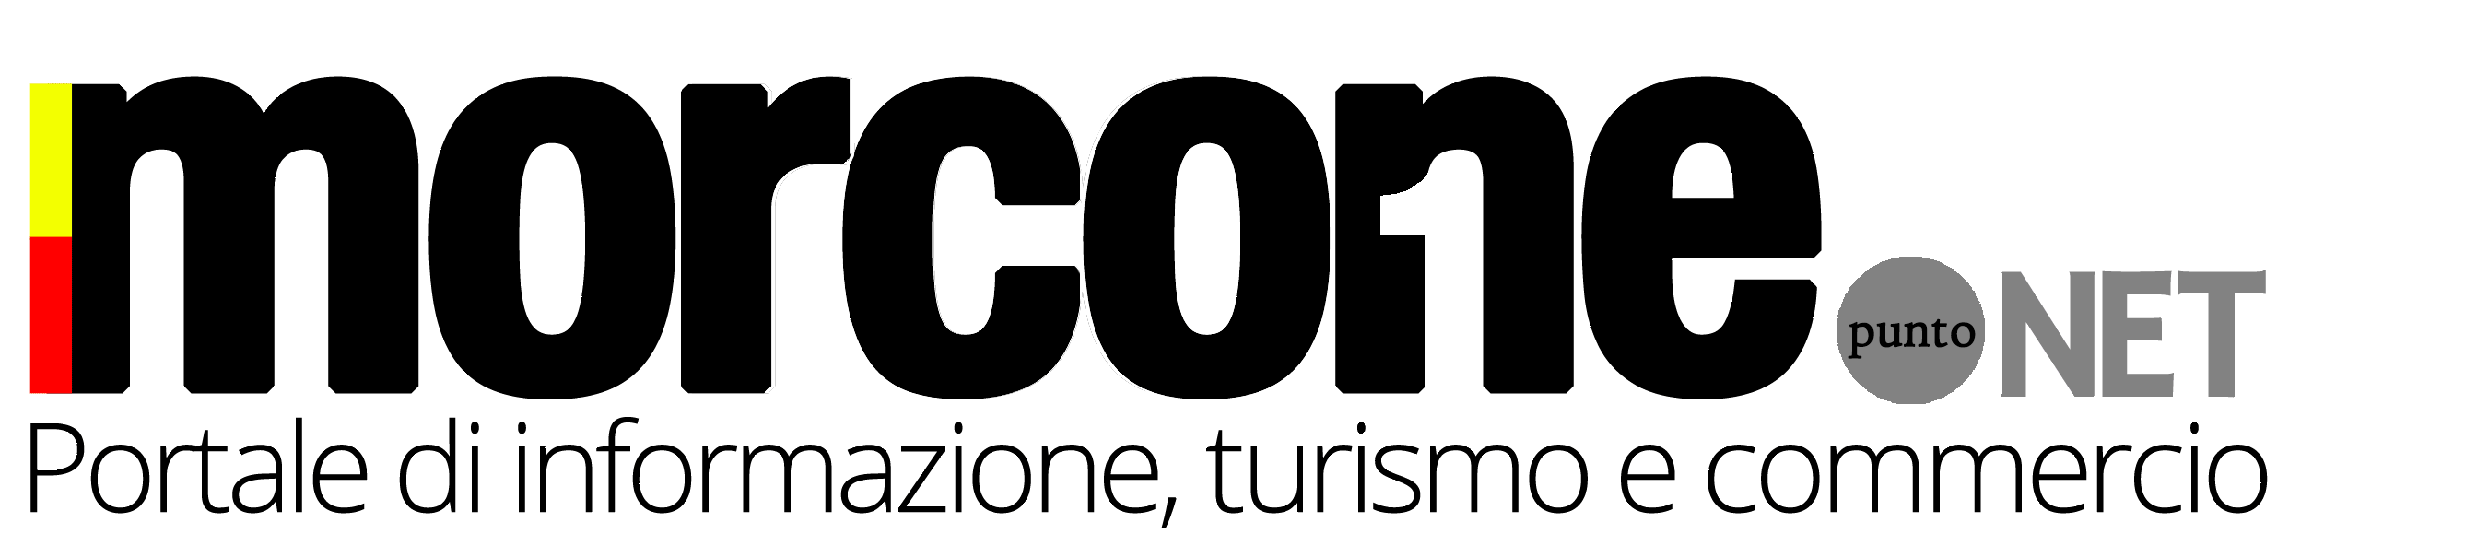 Morcone.net | portale di informazione, turismo e commercio